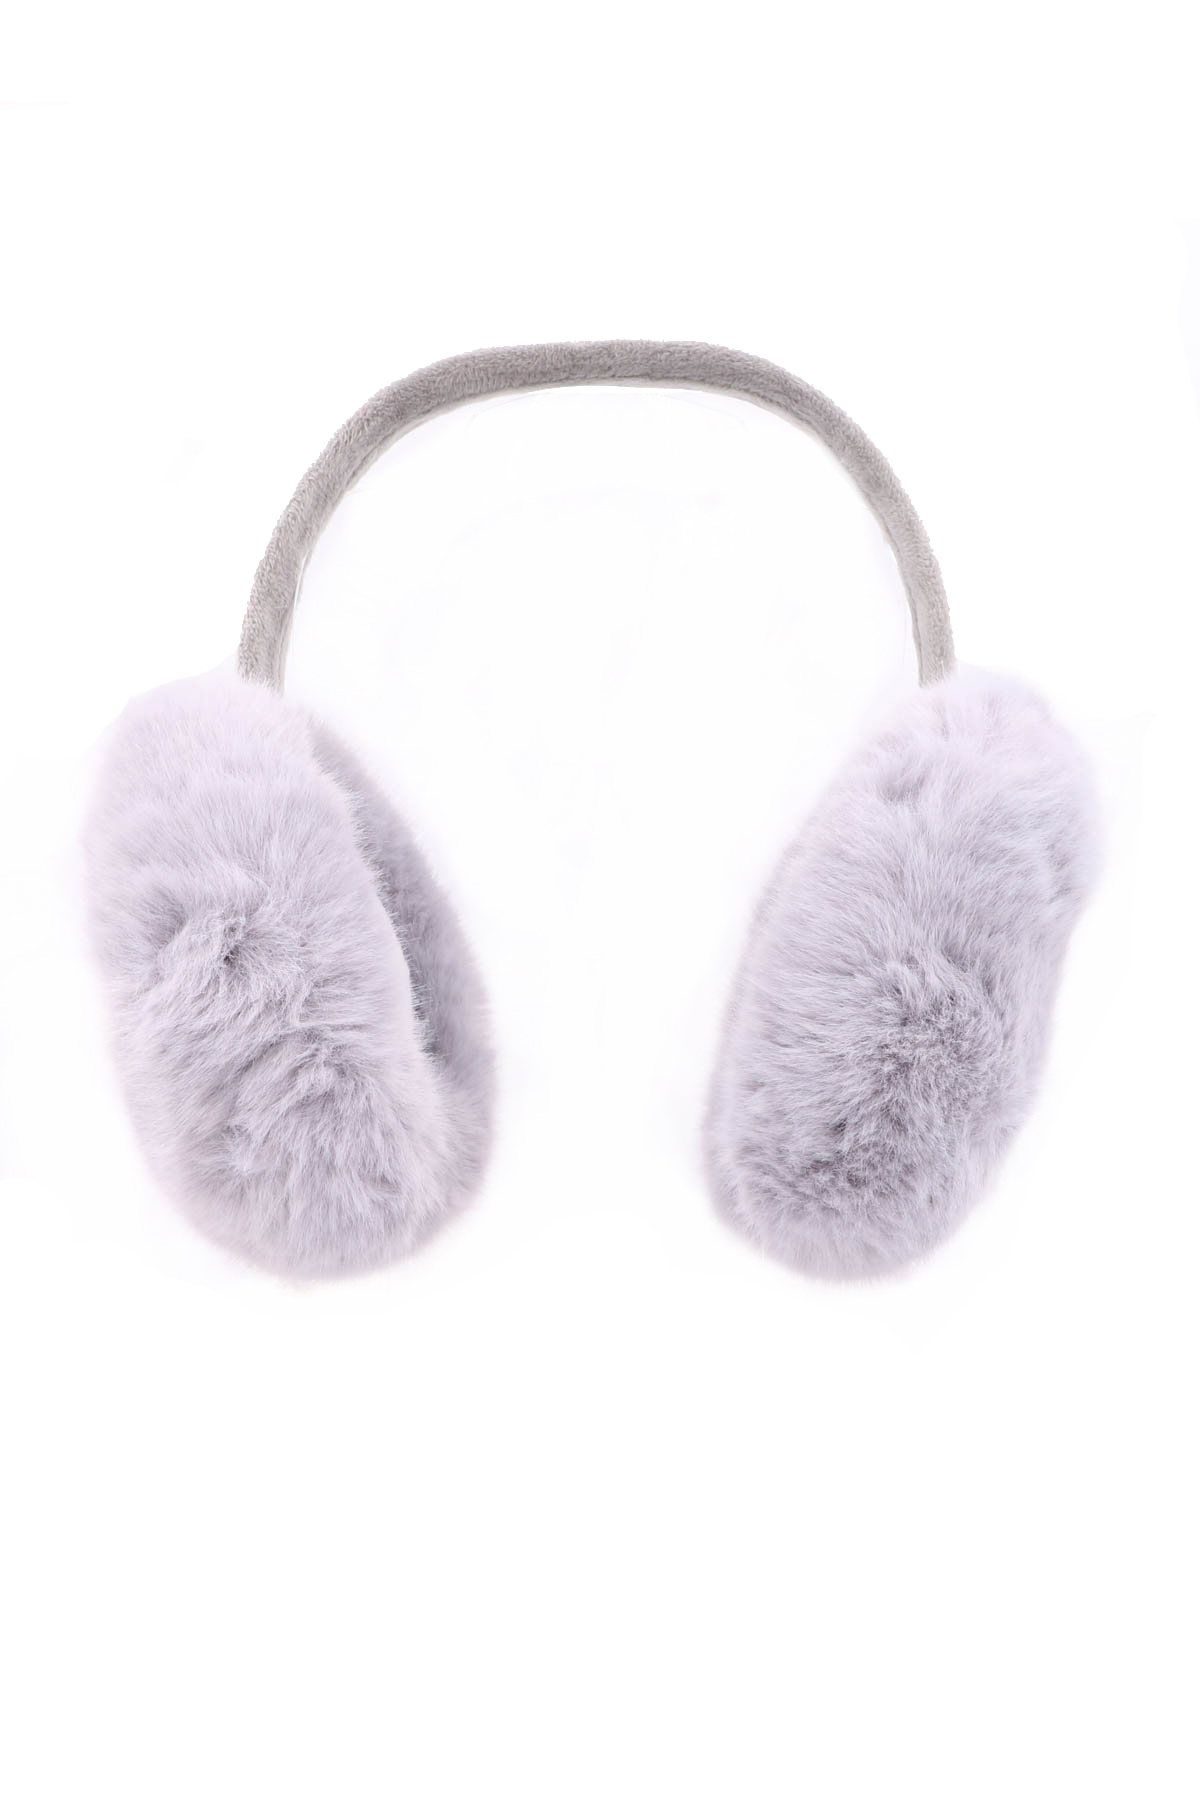 GRAY Fuzzy Ear Muffs - Hair Accessories